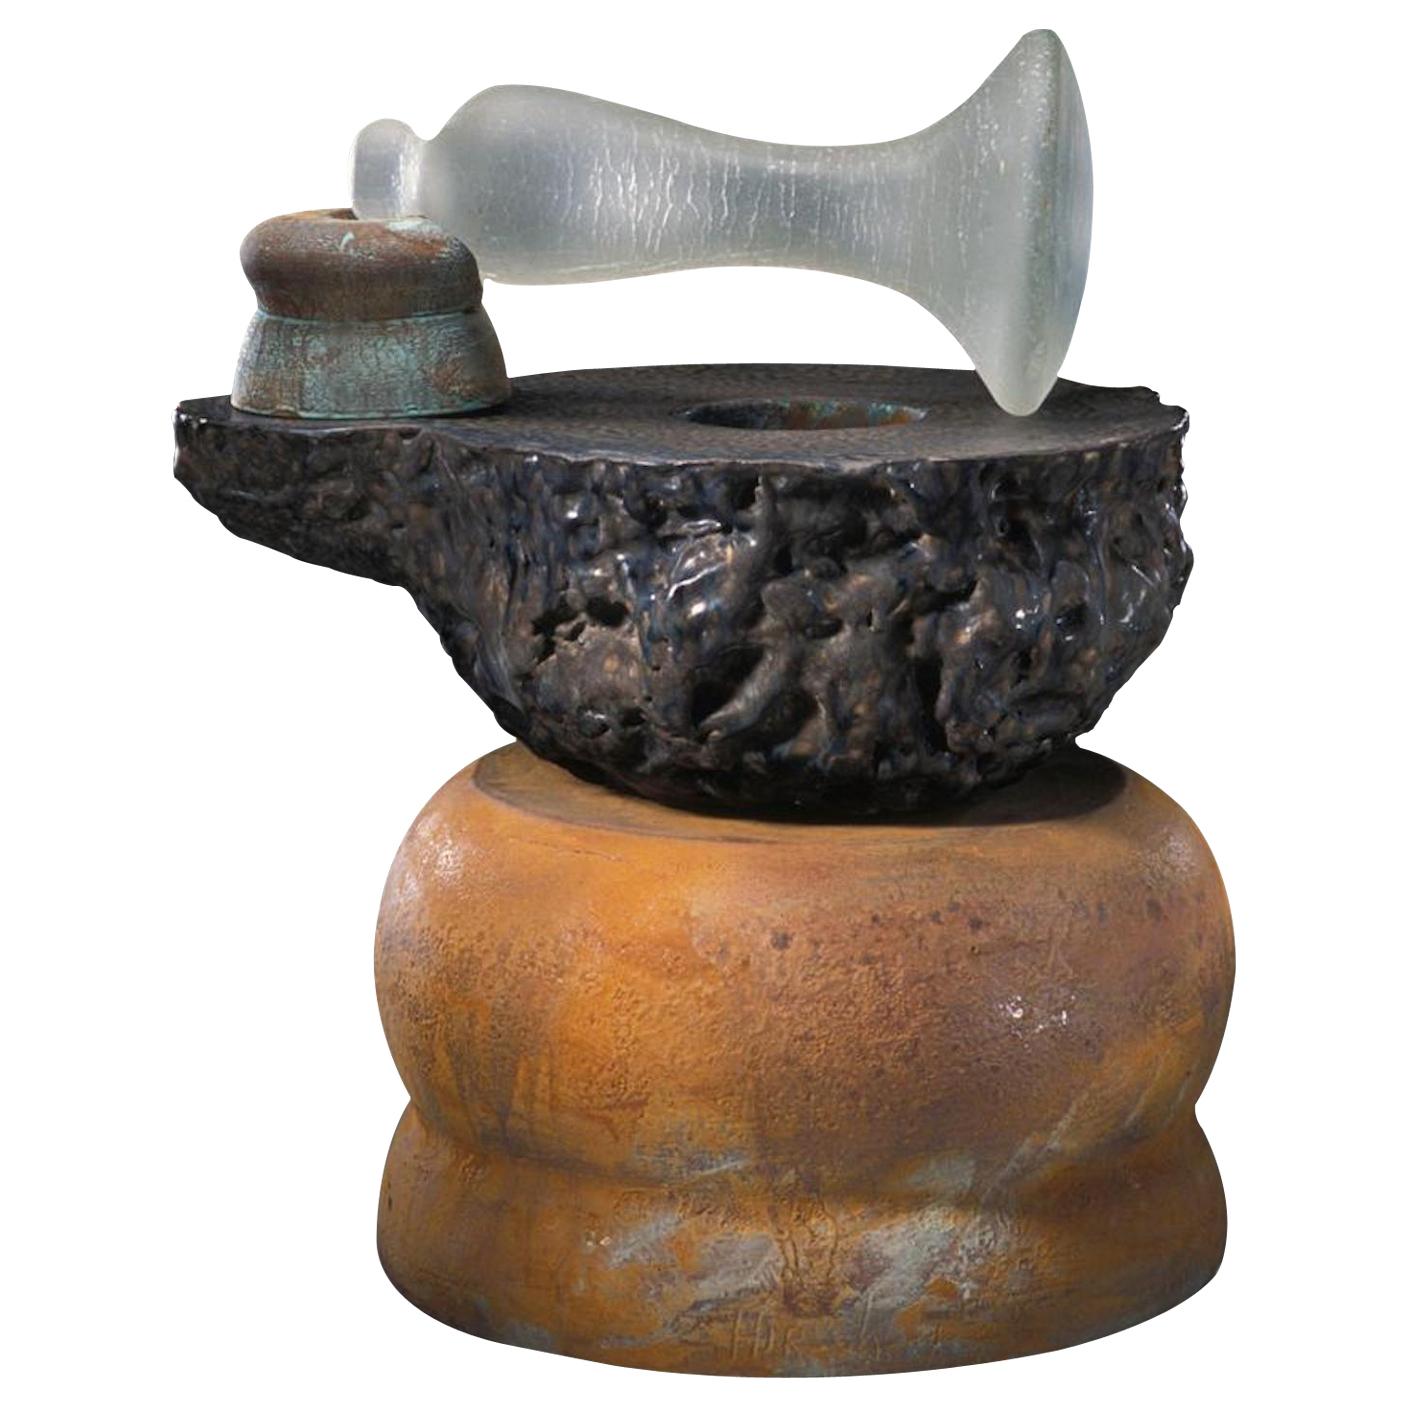 Richard Hirsch Ceramic Mortar and Blown Glass Pestle Sculpture #10, 2004